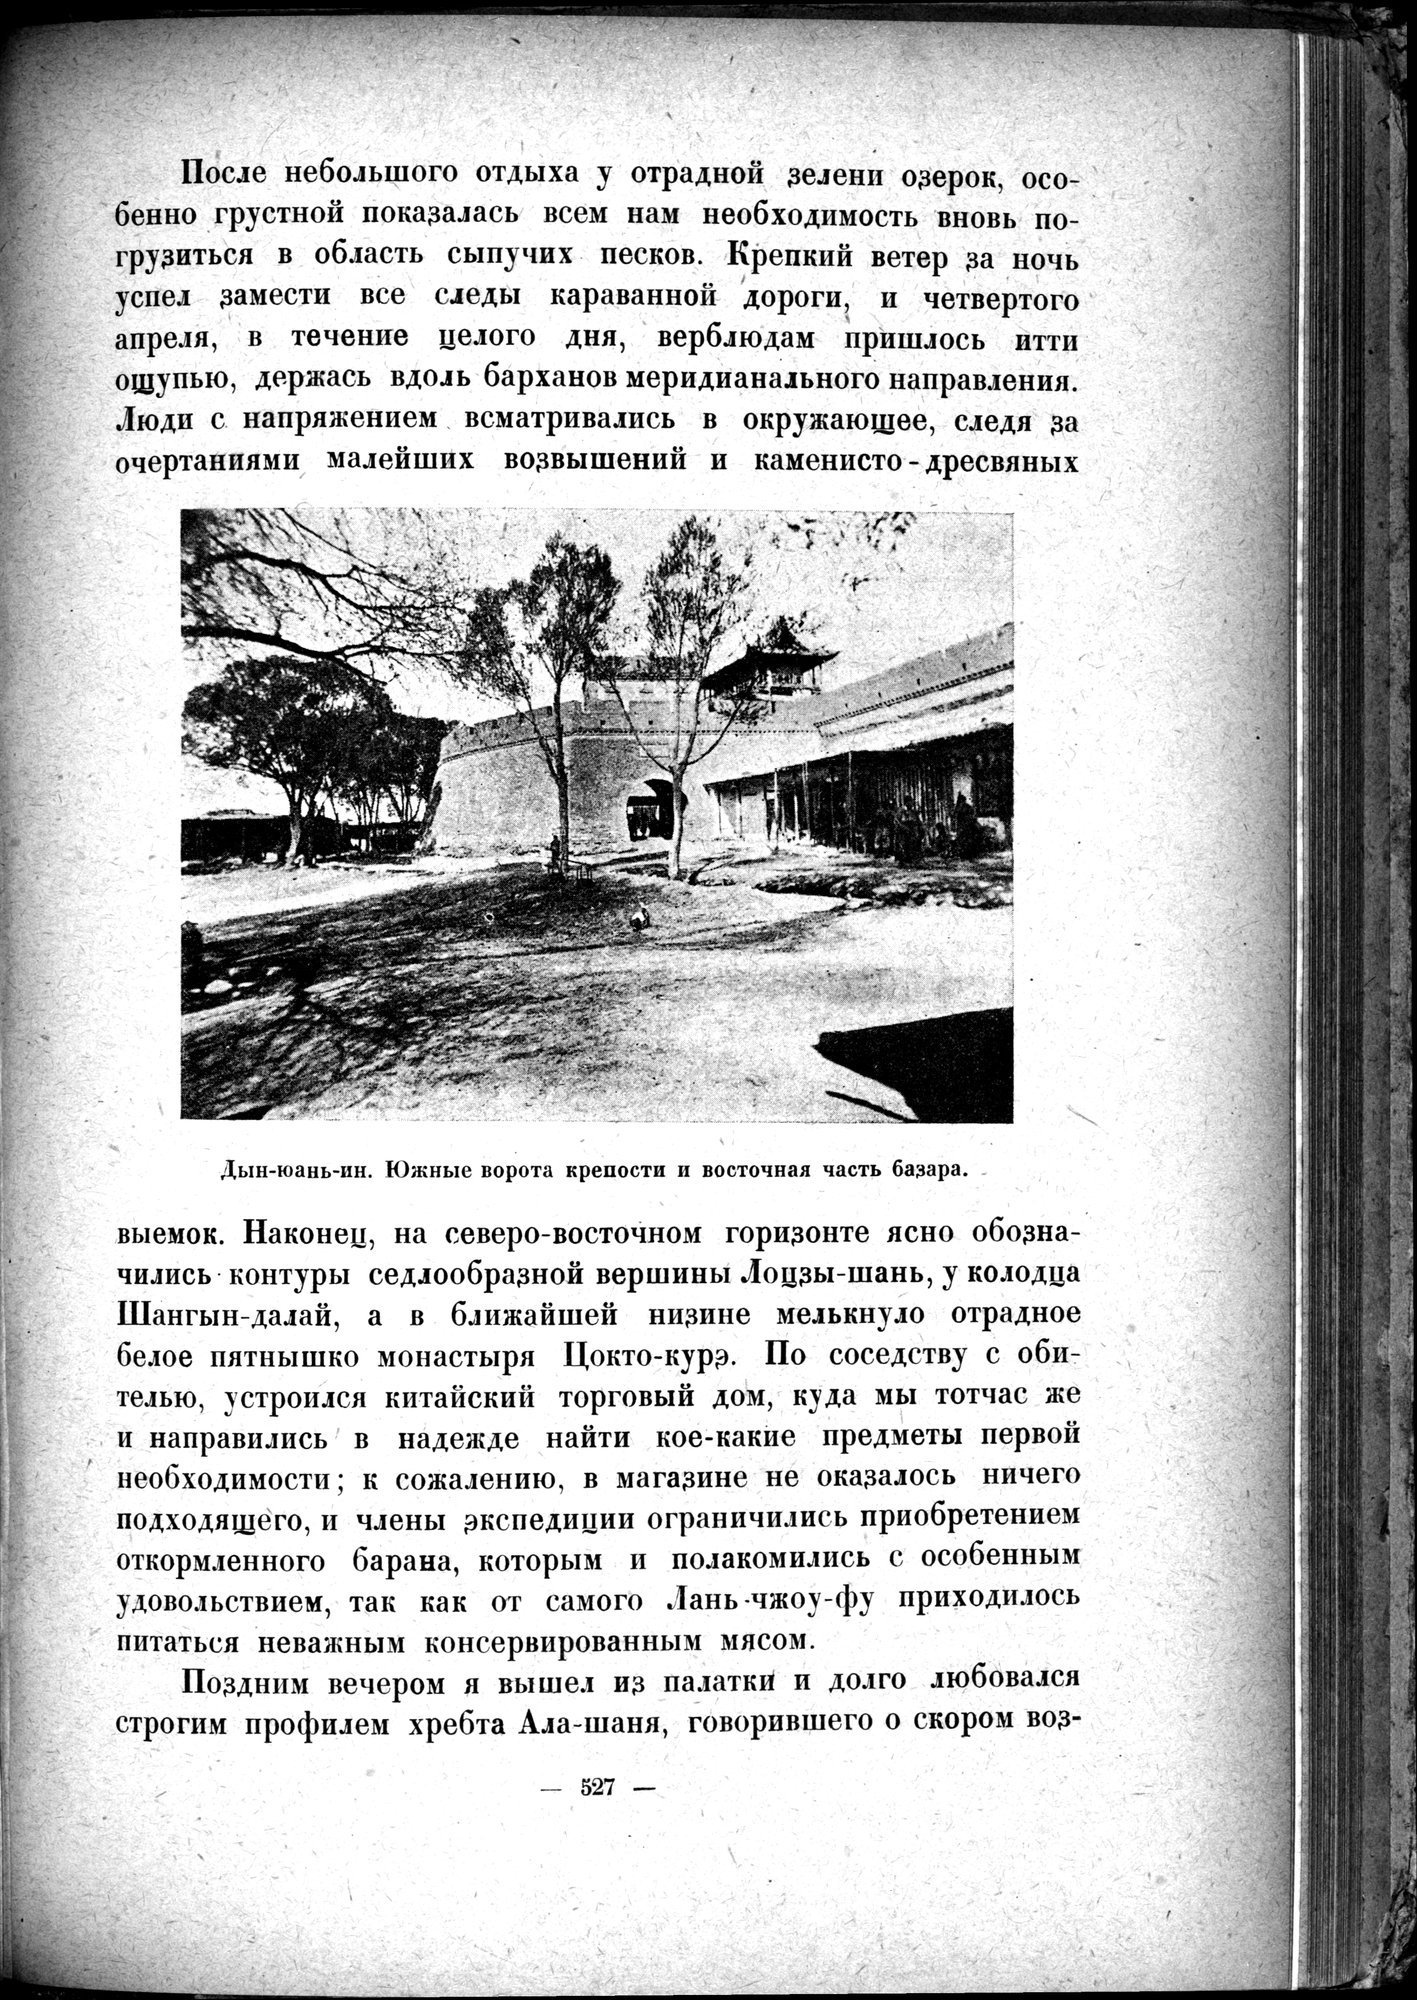 Mongoliya i Amdo i mertby gorod Khara-Khoto : vol.1 / 611 ページ（白黒高解像度画像）